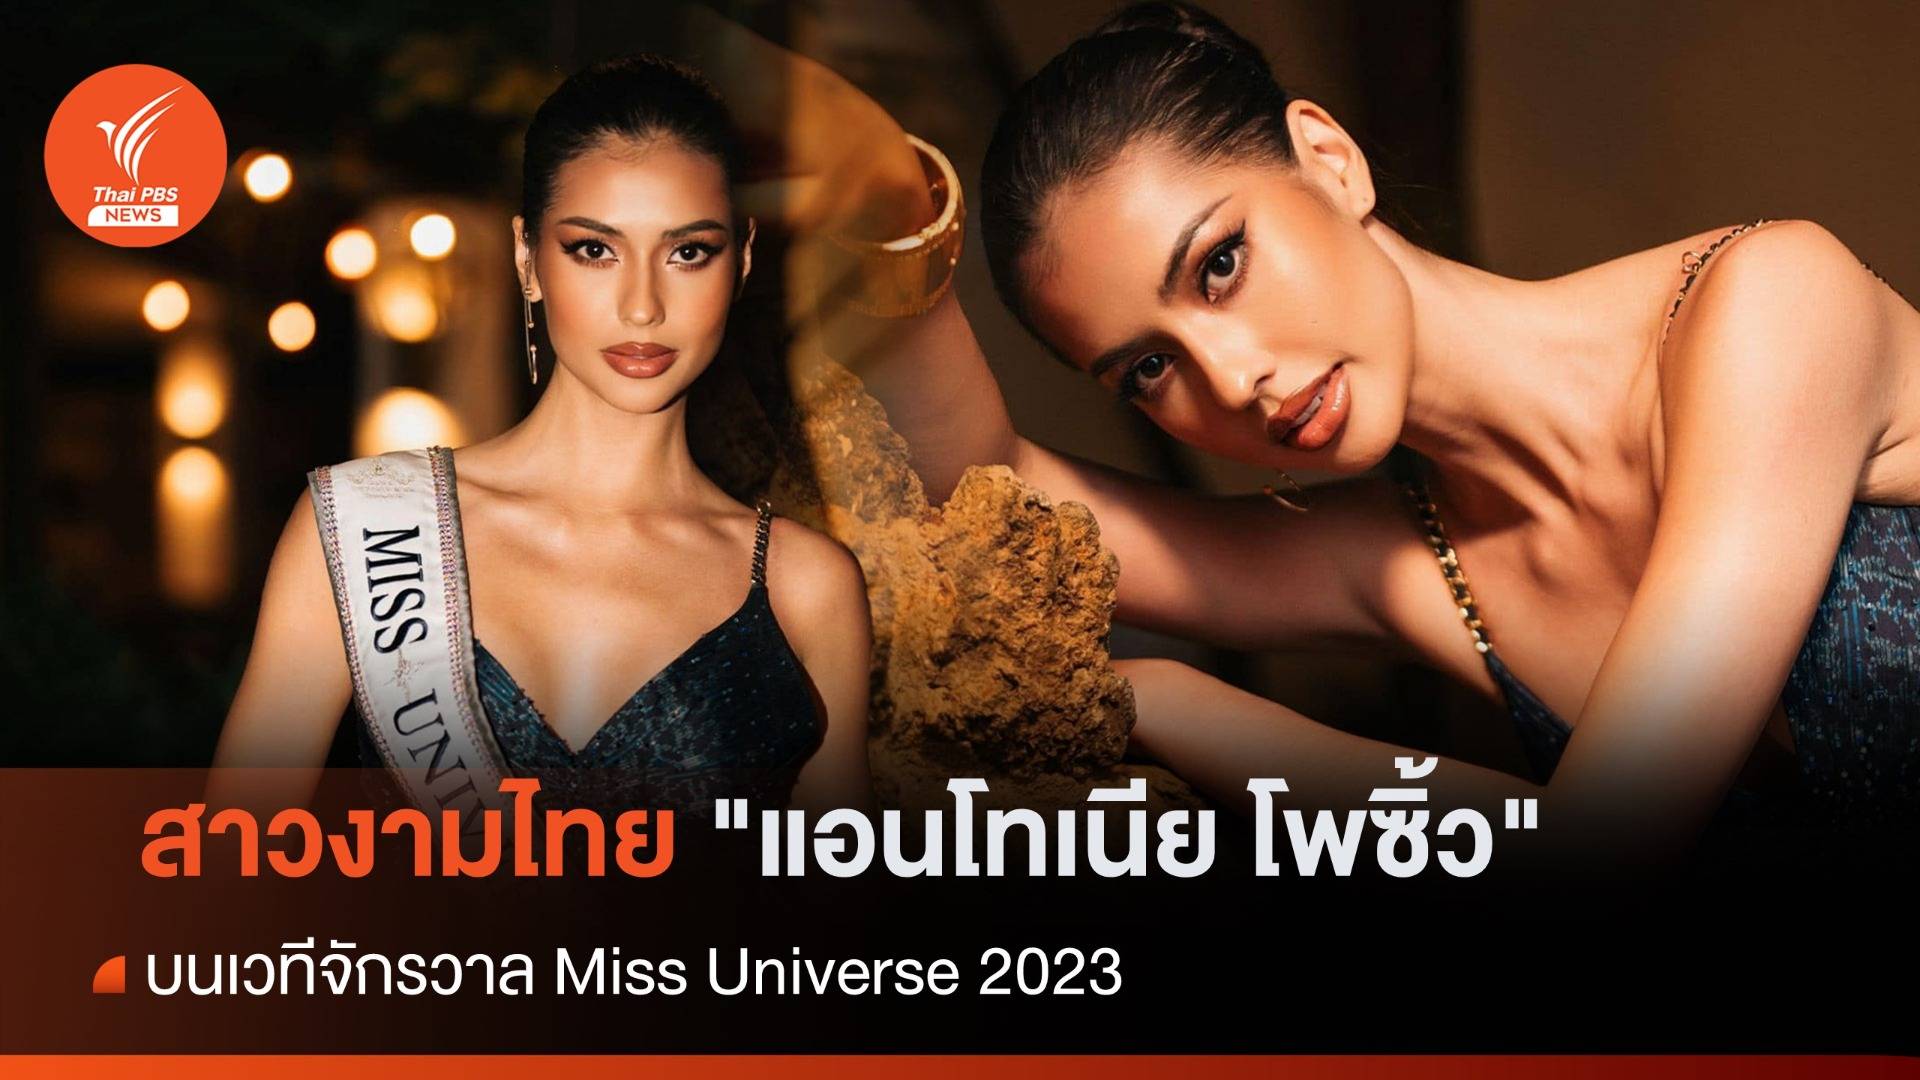 "แอนโทเนีย โพซิ้ว" สาวงามจากไทย คว้ารองอันดับ 1 บนเวทีจักรวาล Miss Universe 2023